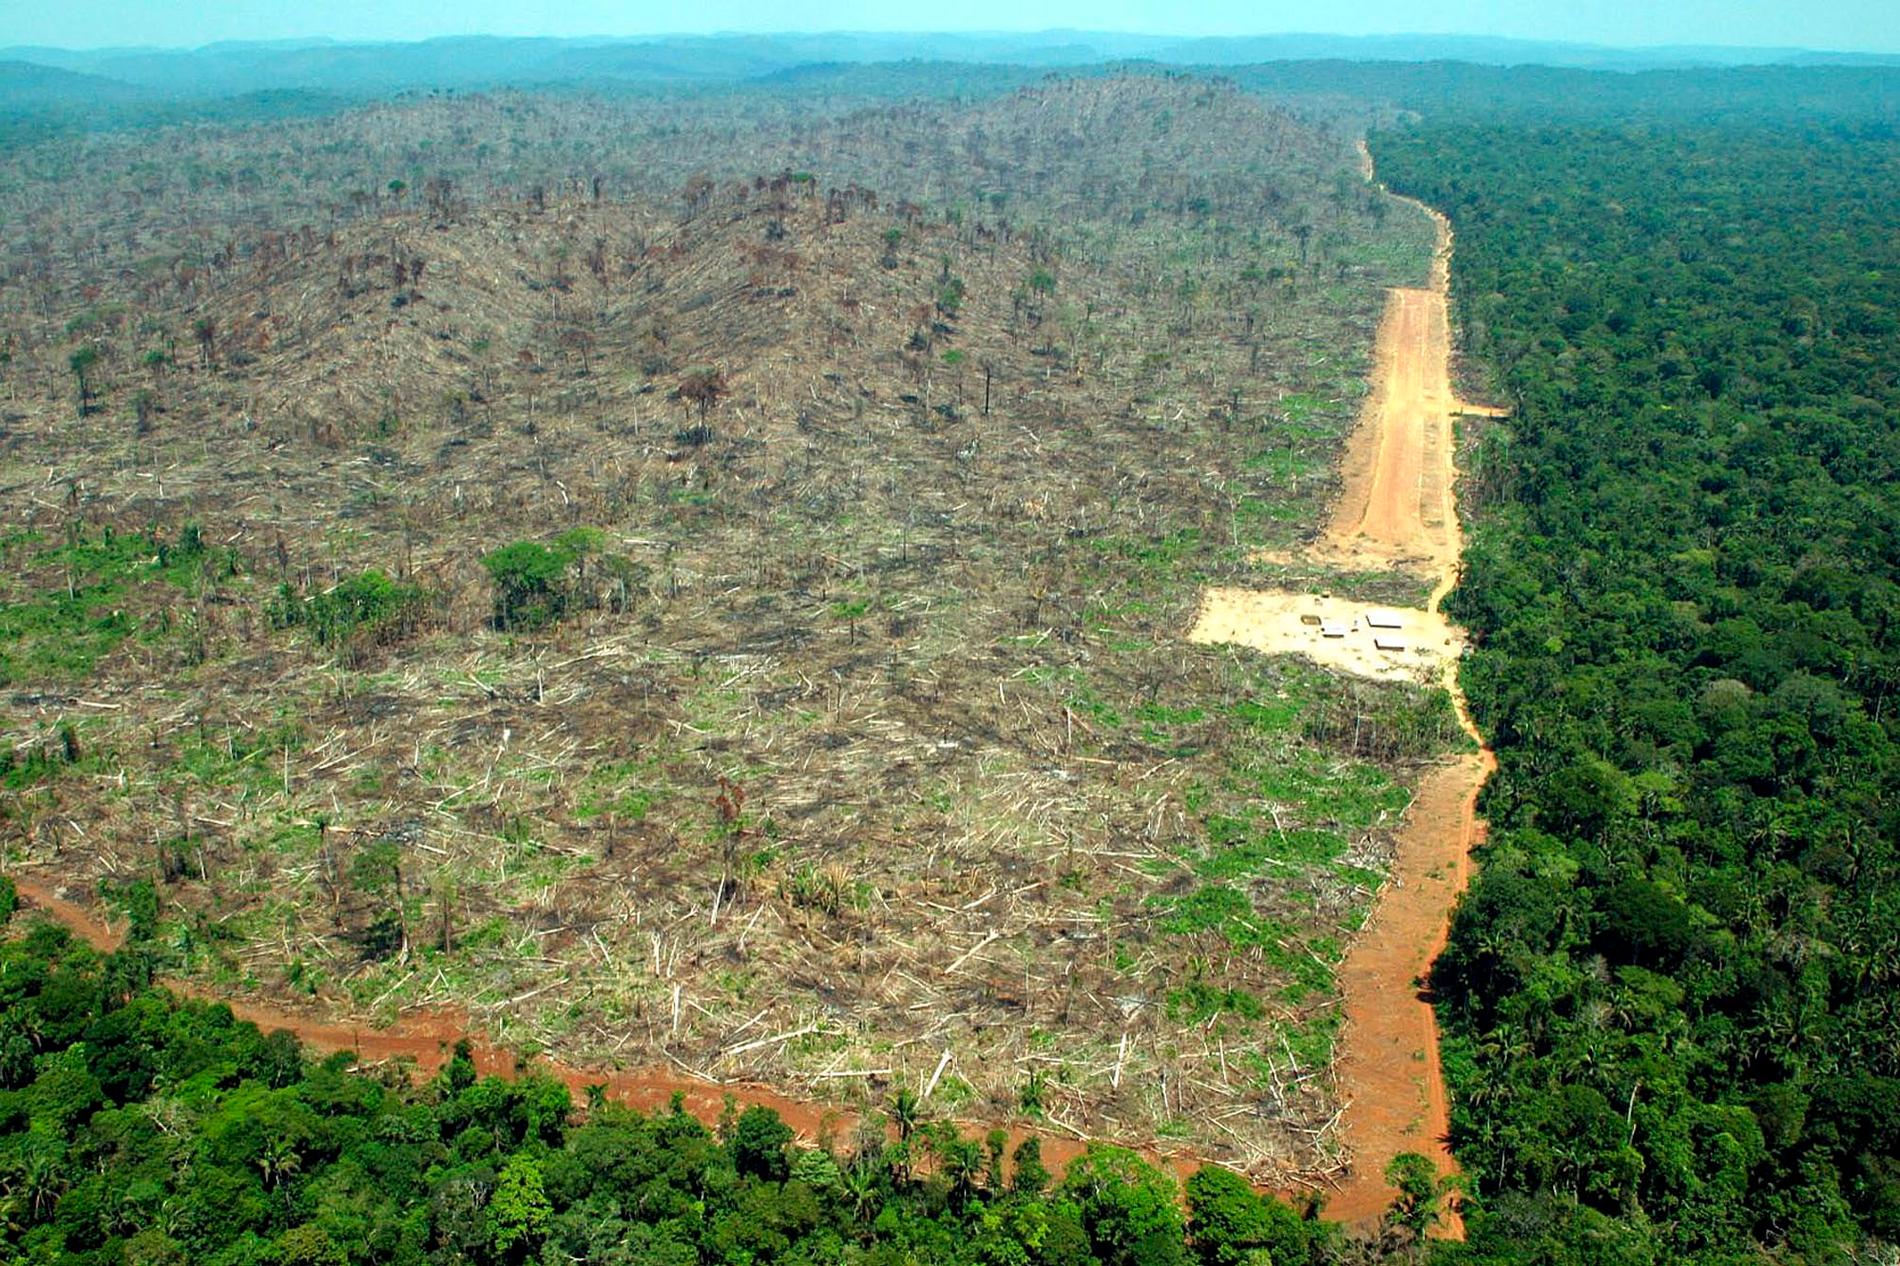 Regnskogen Amazonas riskerar att förvandlas till savann.